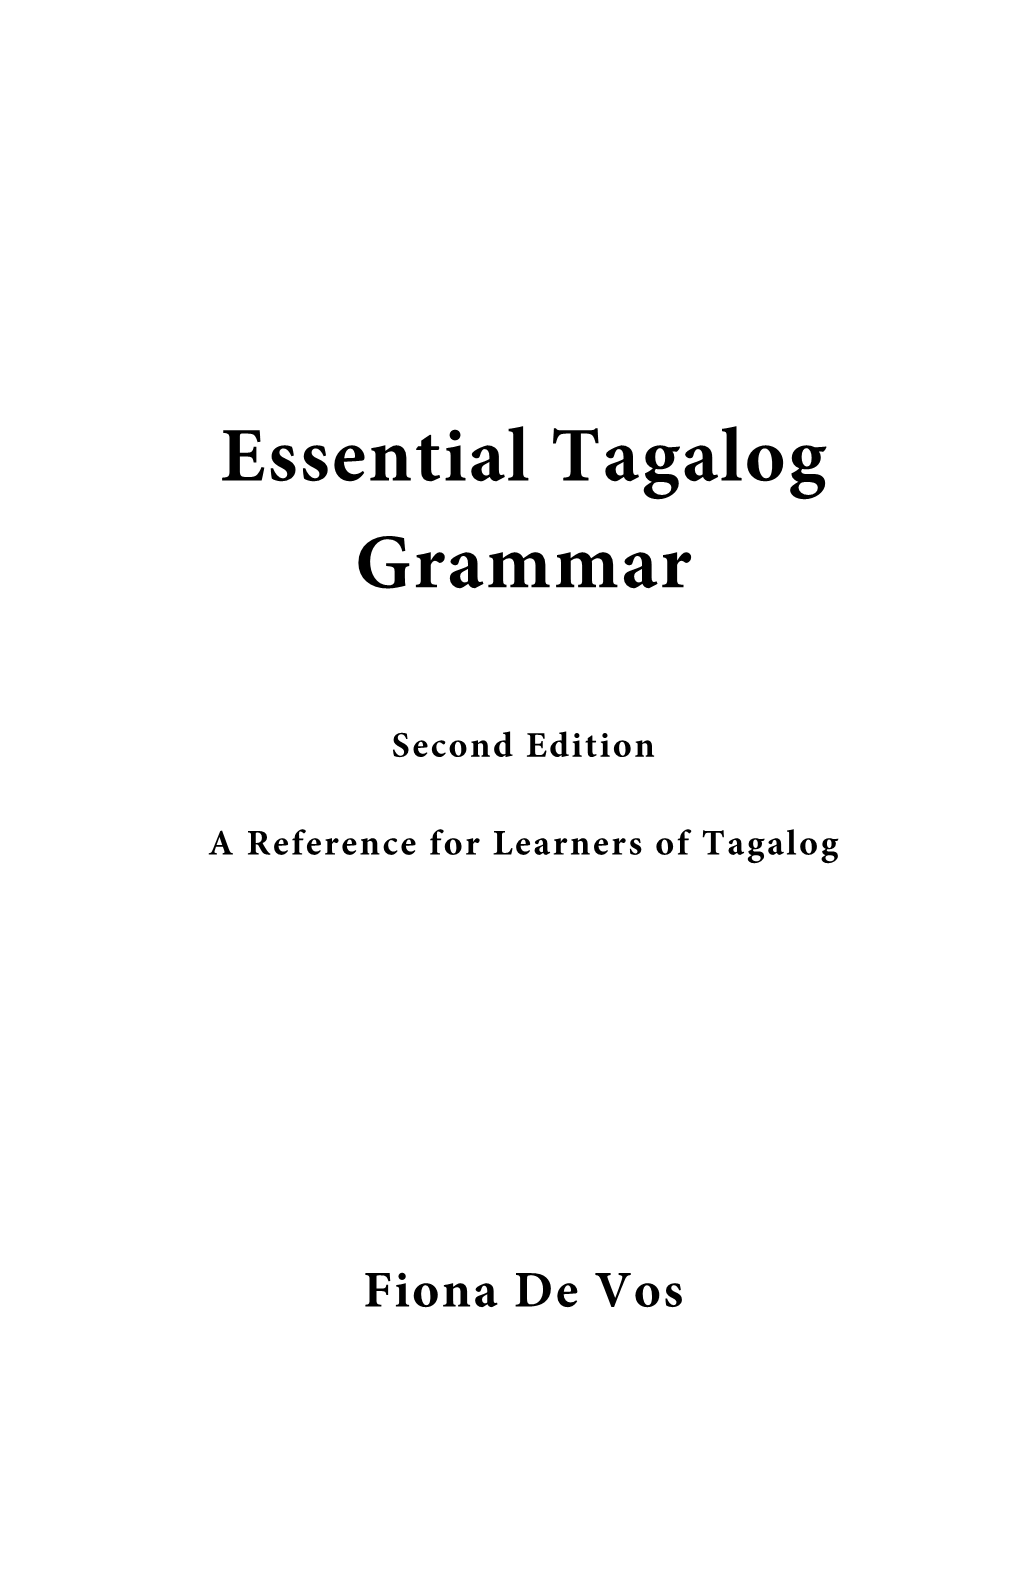 Essential Tagalog Grammar